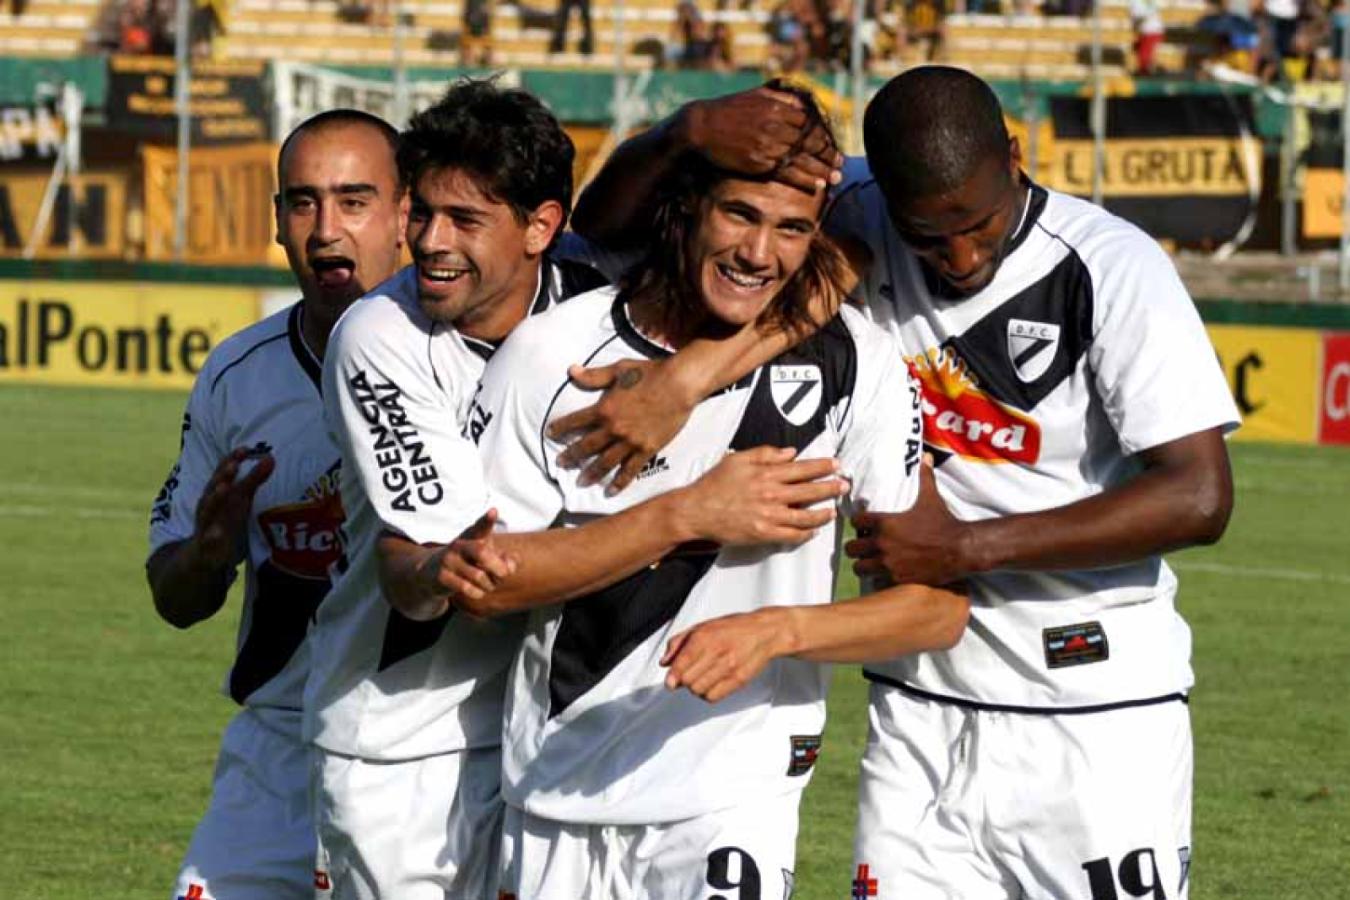 Imagen Edinson Cavani inició su carrera en Danubio. Jugó 2 años, fue campeón y partió a Palermo en 2007 (@PORDECIRALGOWEB)